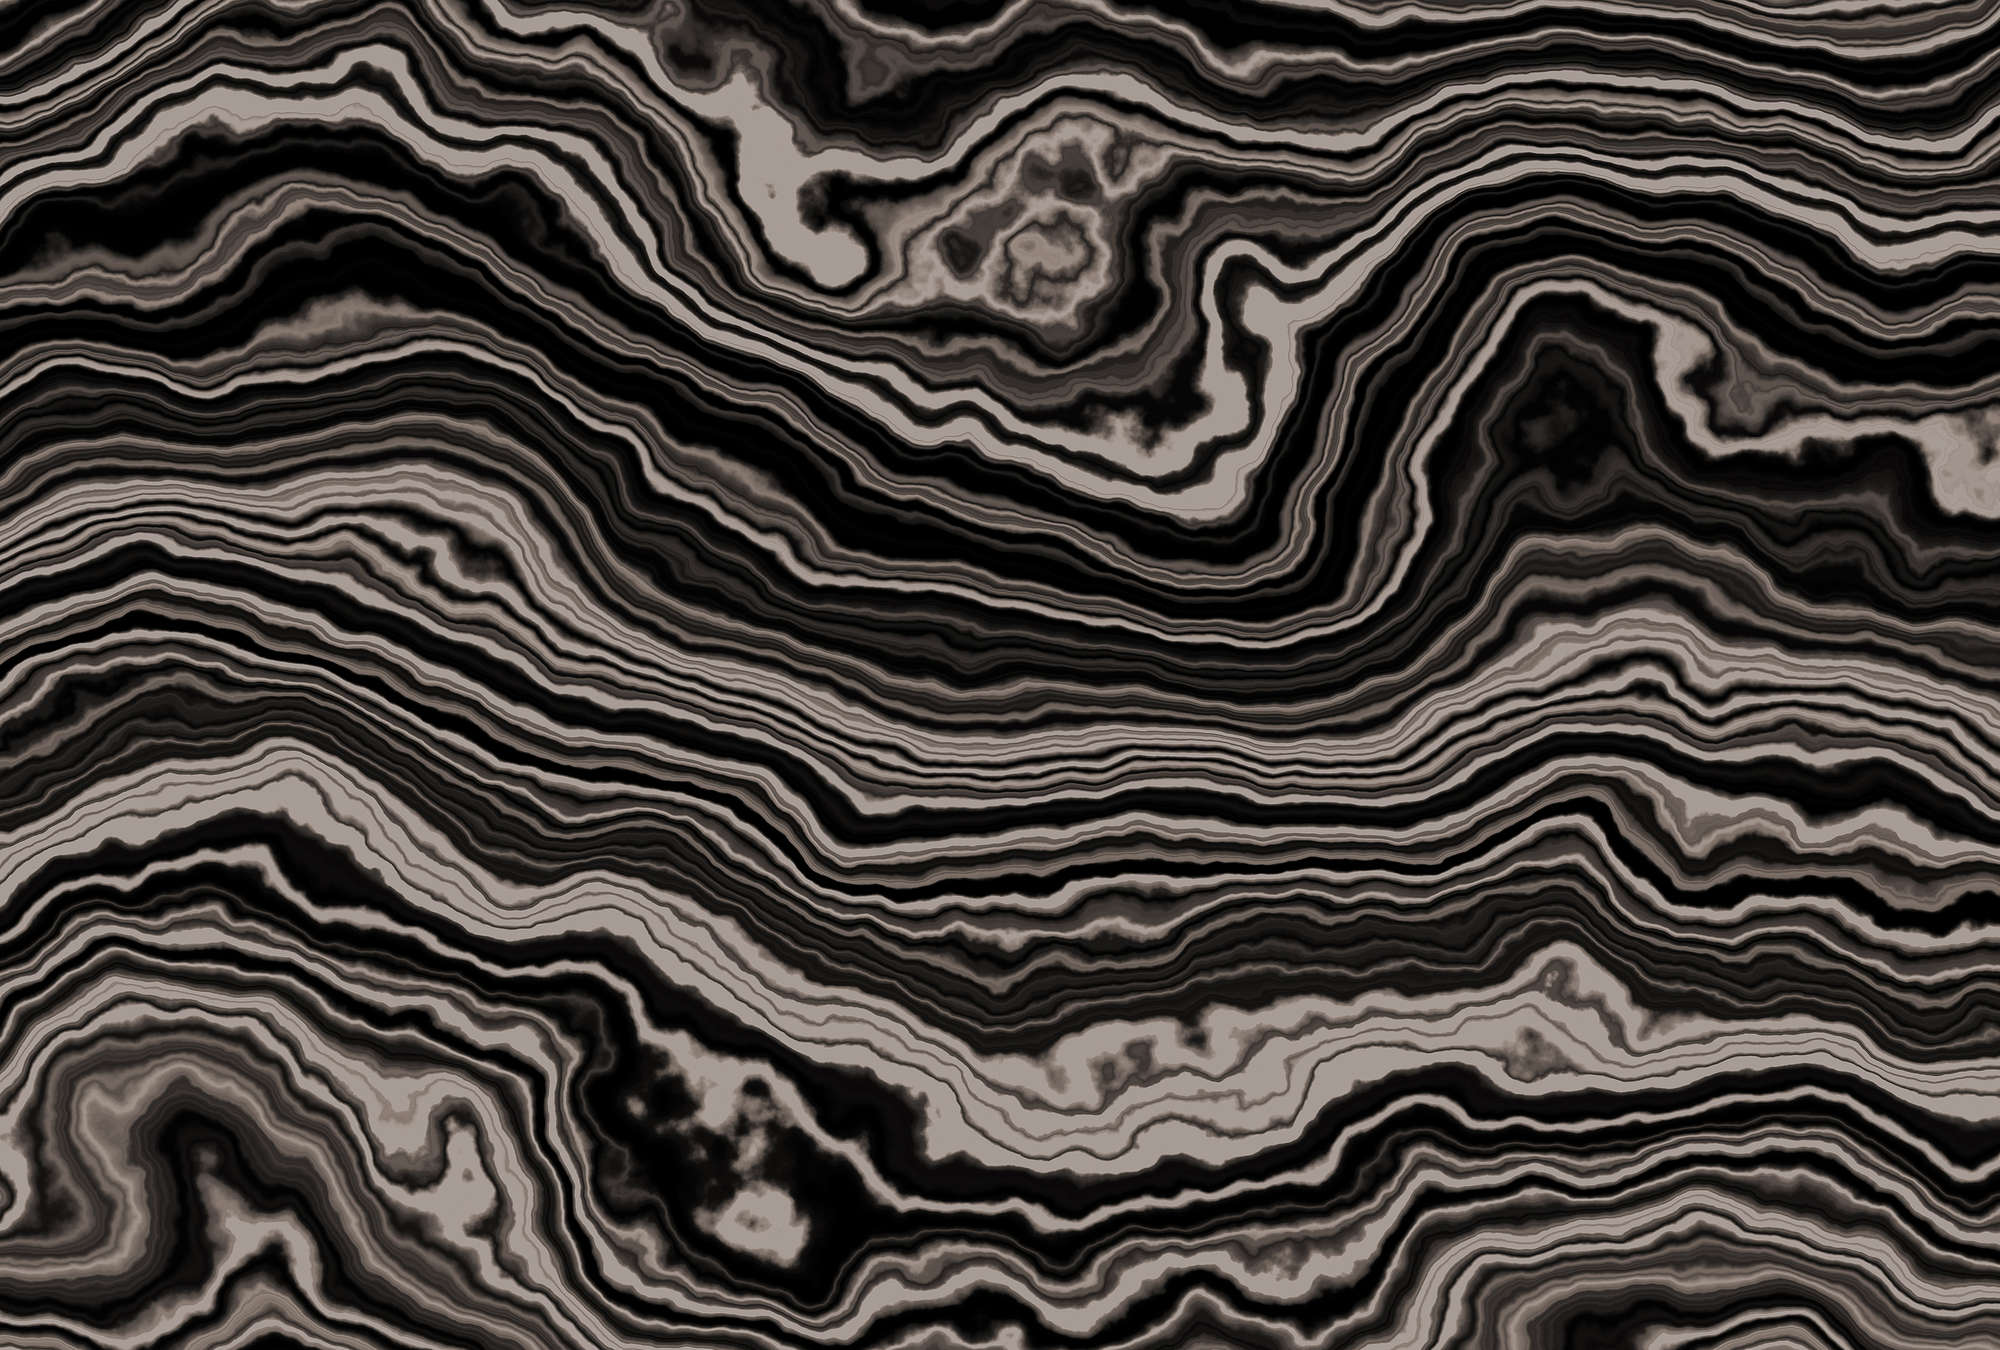             Onyx 2 - Querschnitt eines Onyx Marmor als Fototapete – Beige, Schwarz | Mattes Glattvlies
        